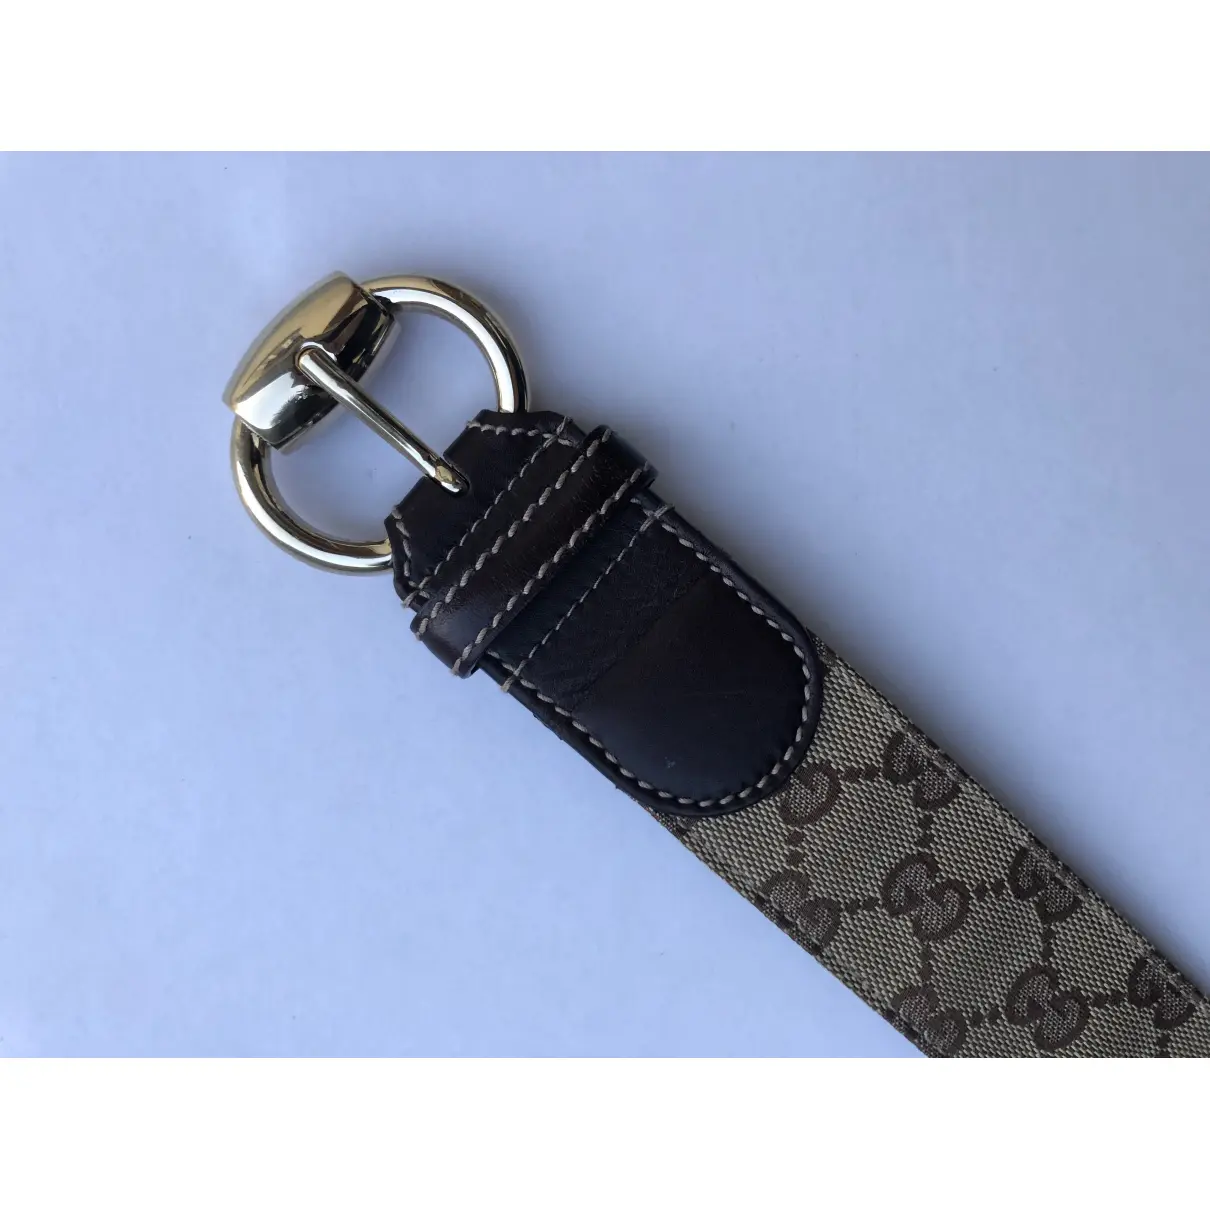 Luxury Gucci Belts Women - Vintage